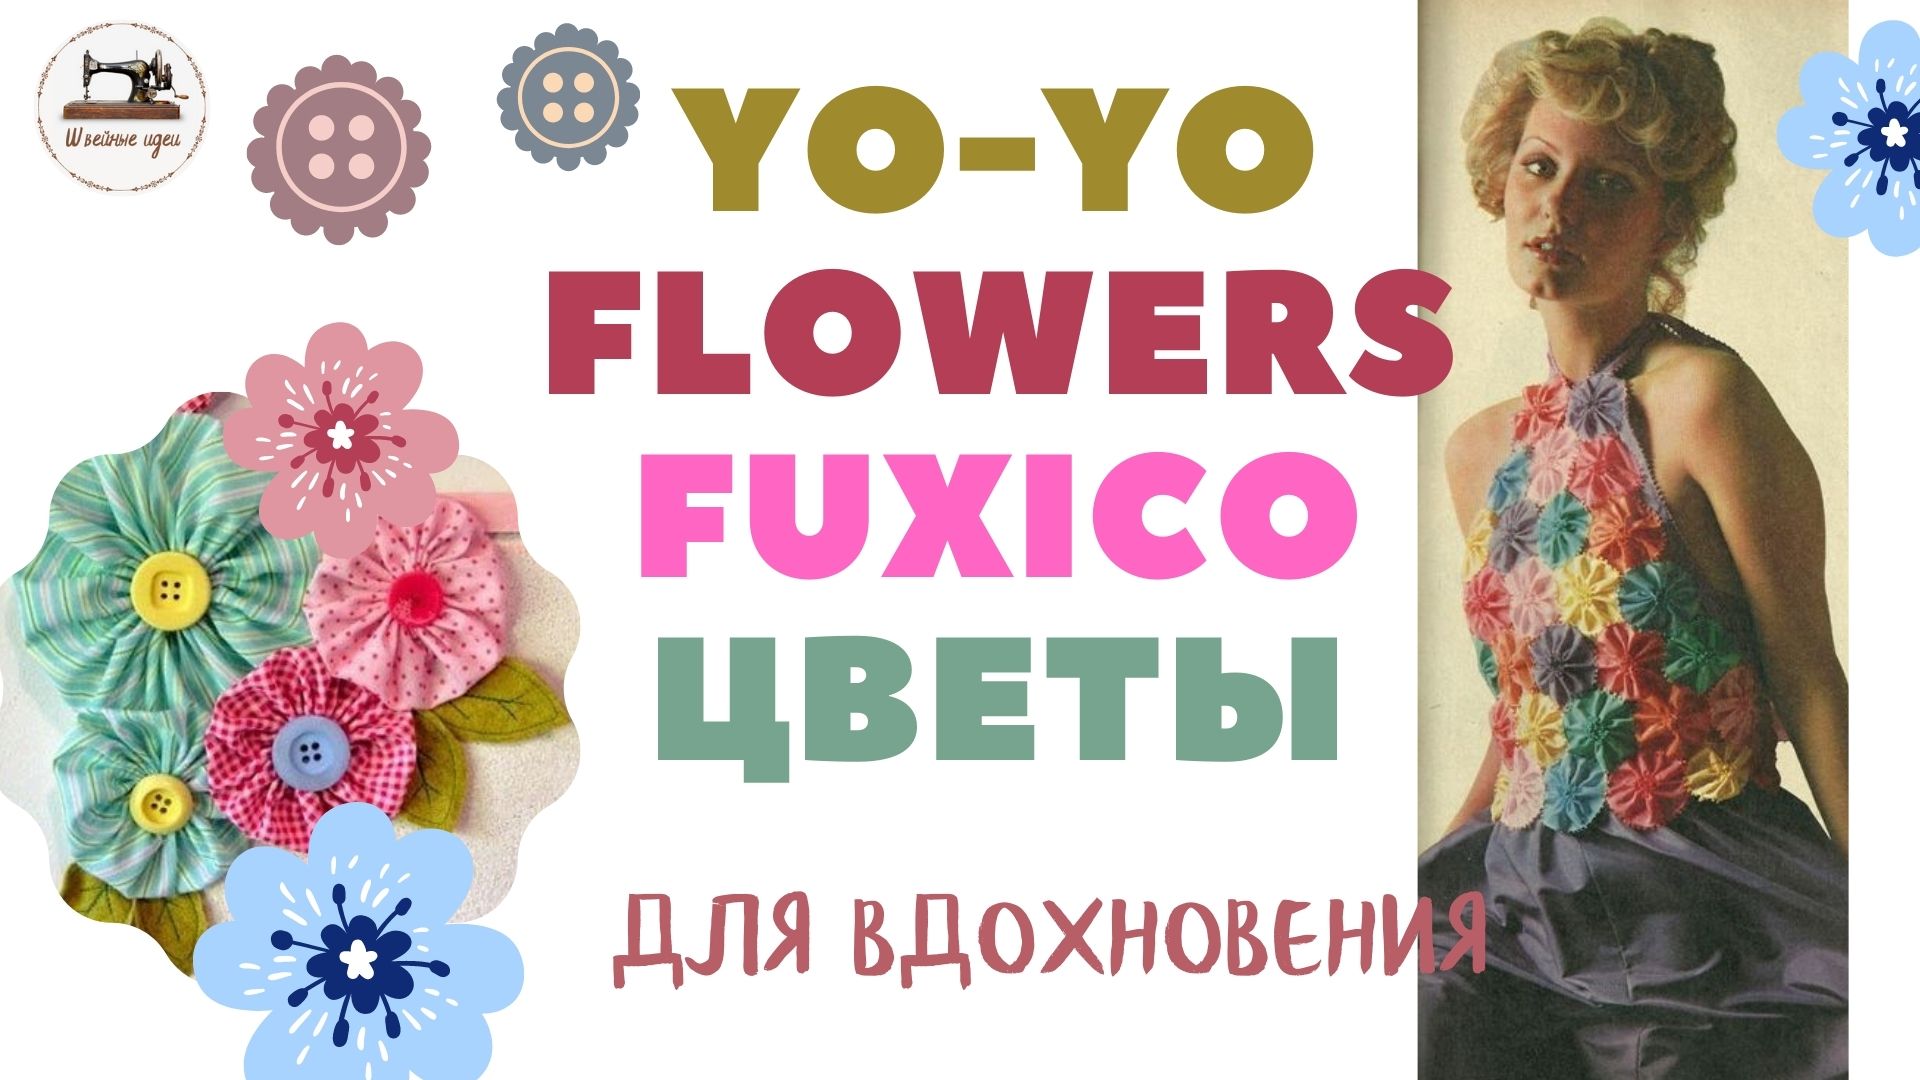 Цветы из ткани Fuxico Flowers Yo Yo своими руками. Много красоты для вдохновения